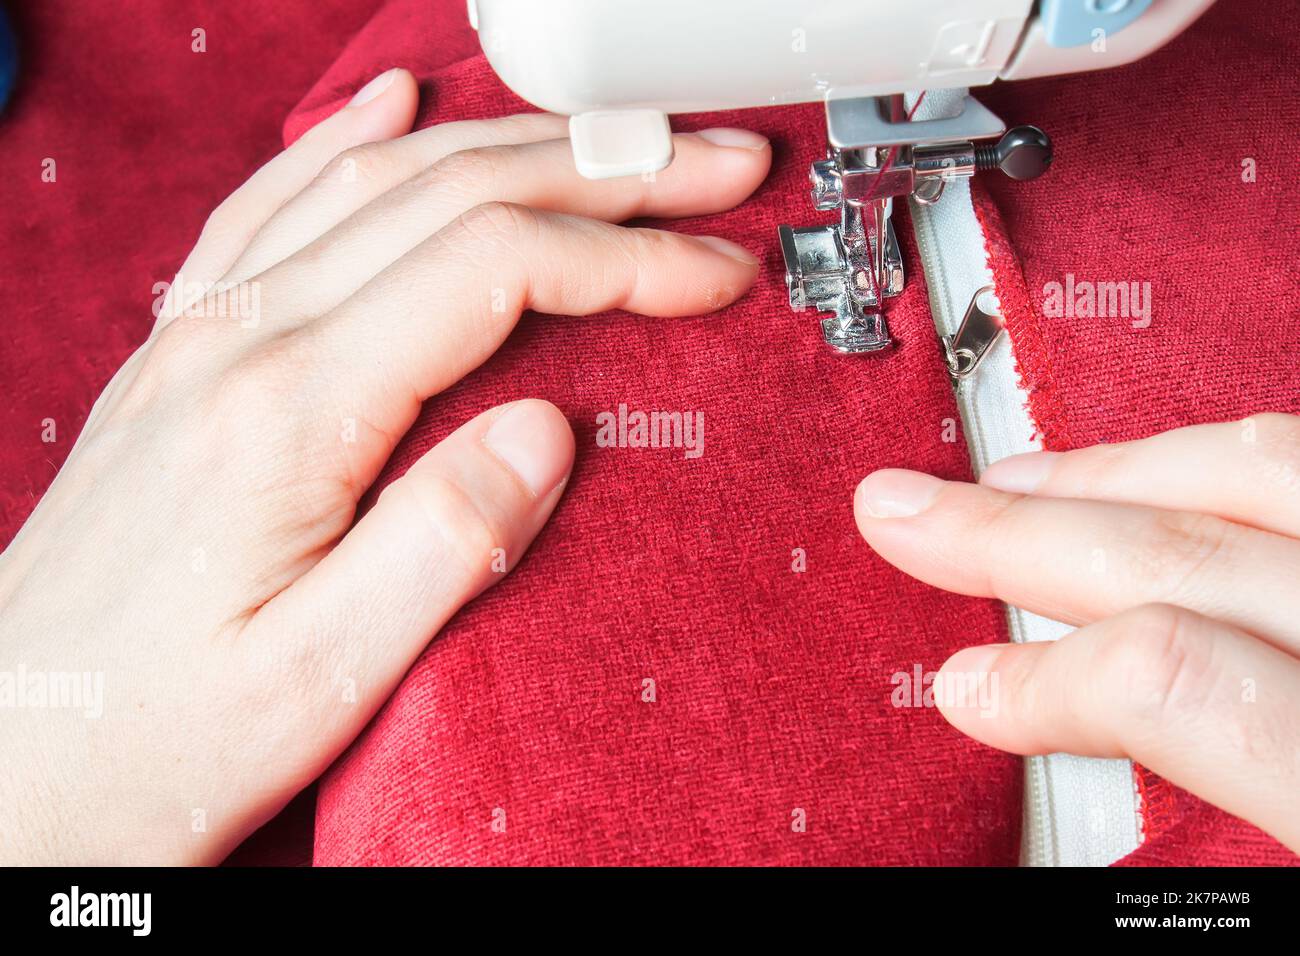 Schneiderhände nähen den Reißverschluss an roten Kleidungsstücken von einer modernen Nähmaschine mit speziellem Nähfuß. Nähprozess Stockfoto